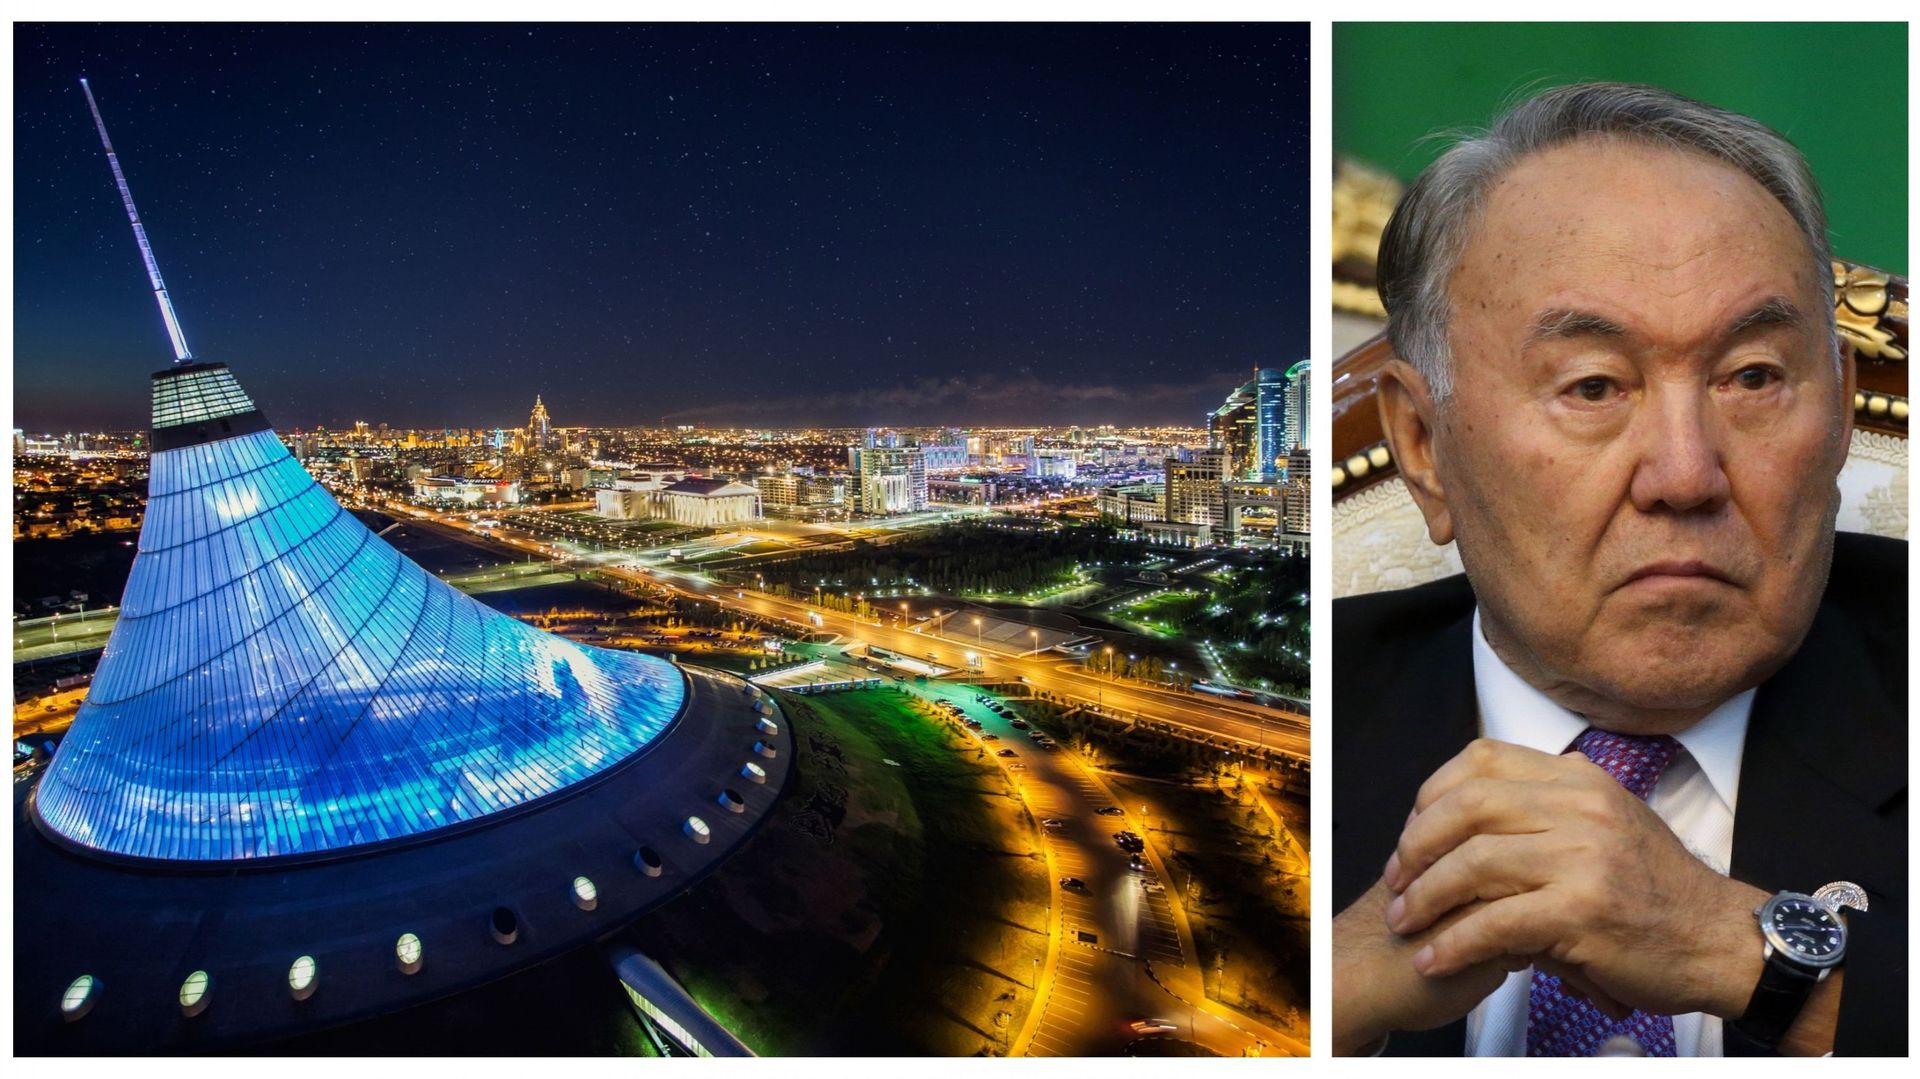 Vue d’Astana et image de l’ex-président Nazarbaïev en 2016